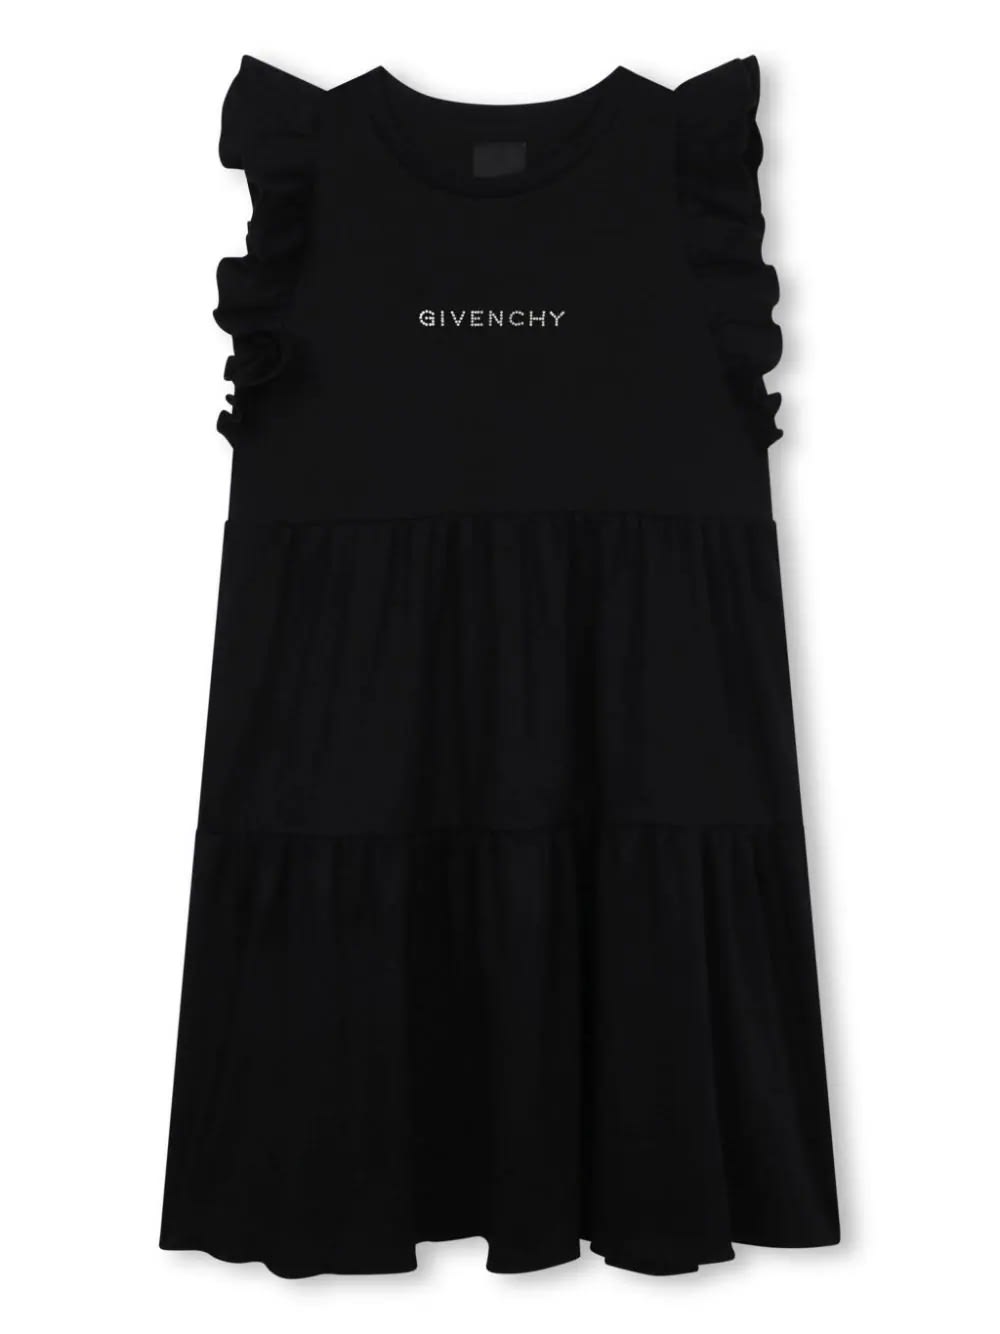 Shop Givenchy Black Sleeveless Dress With Rhinestone Logo